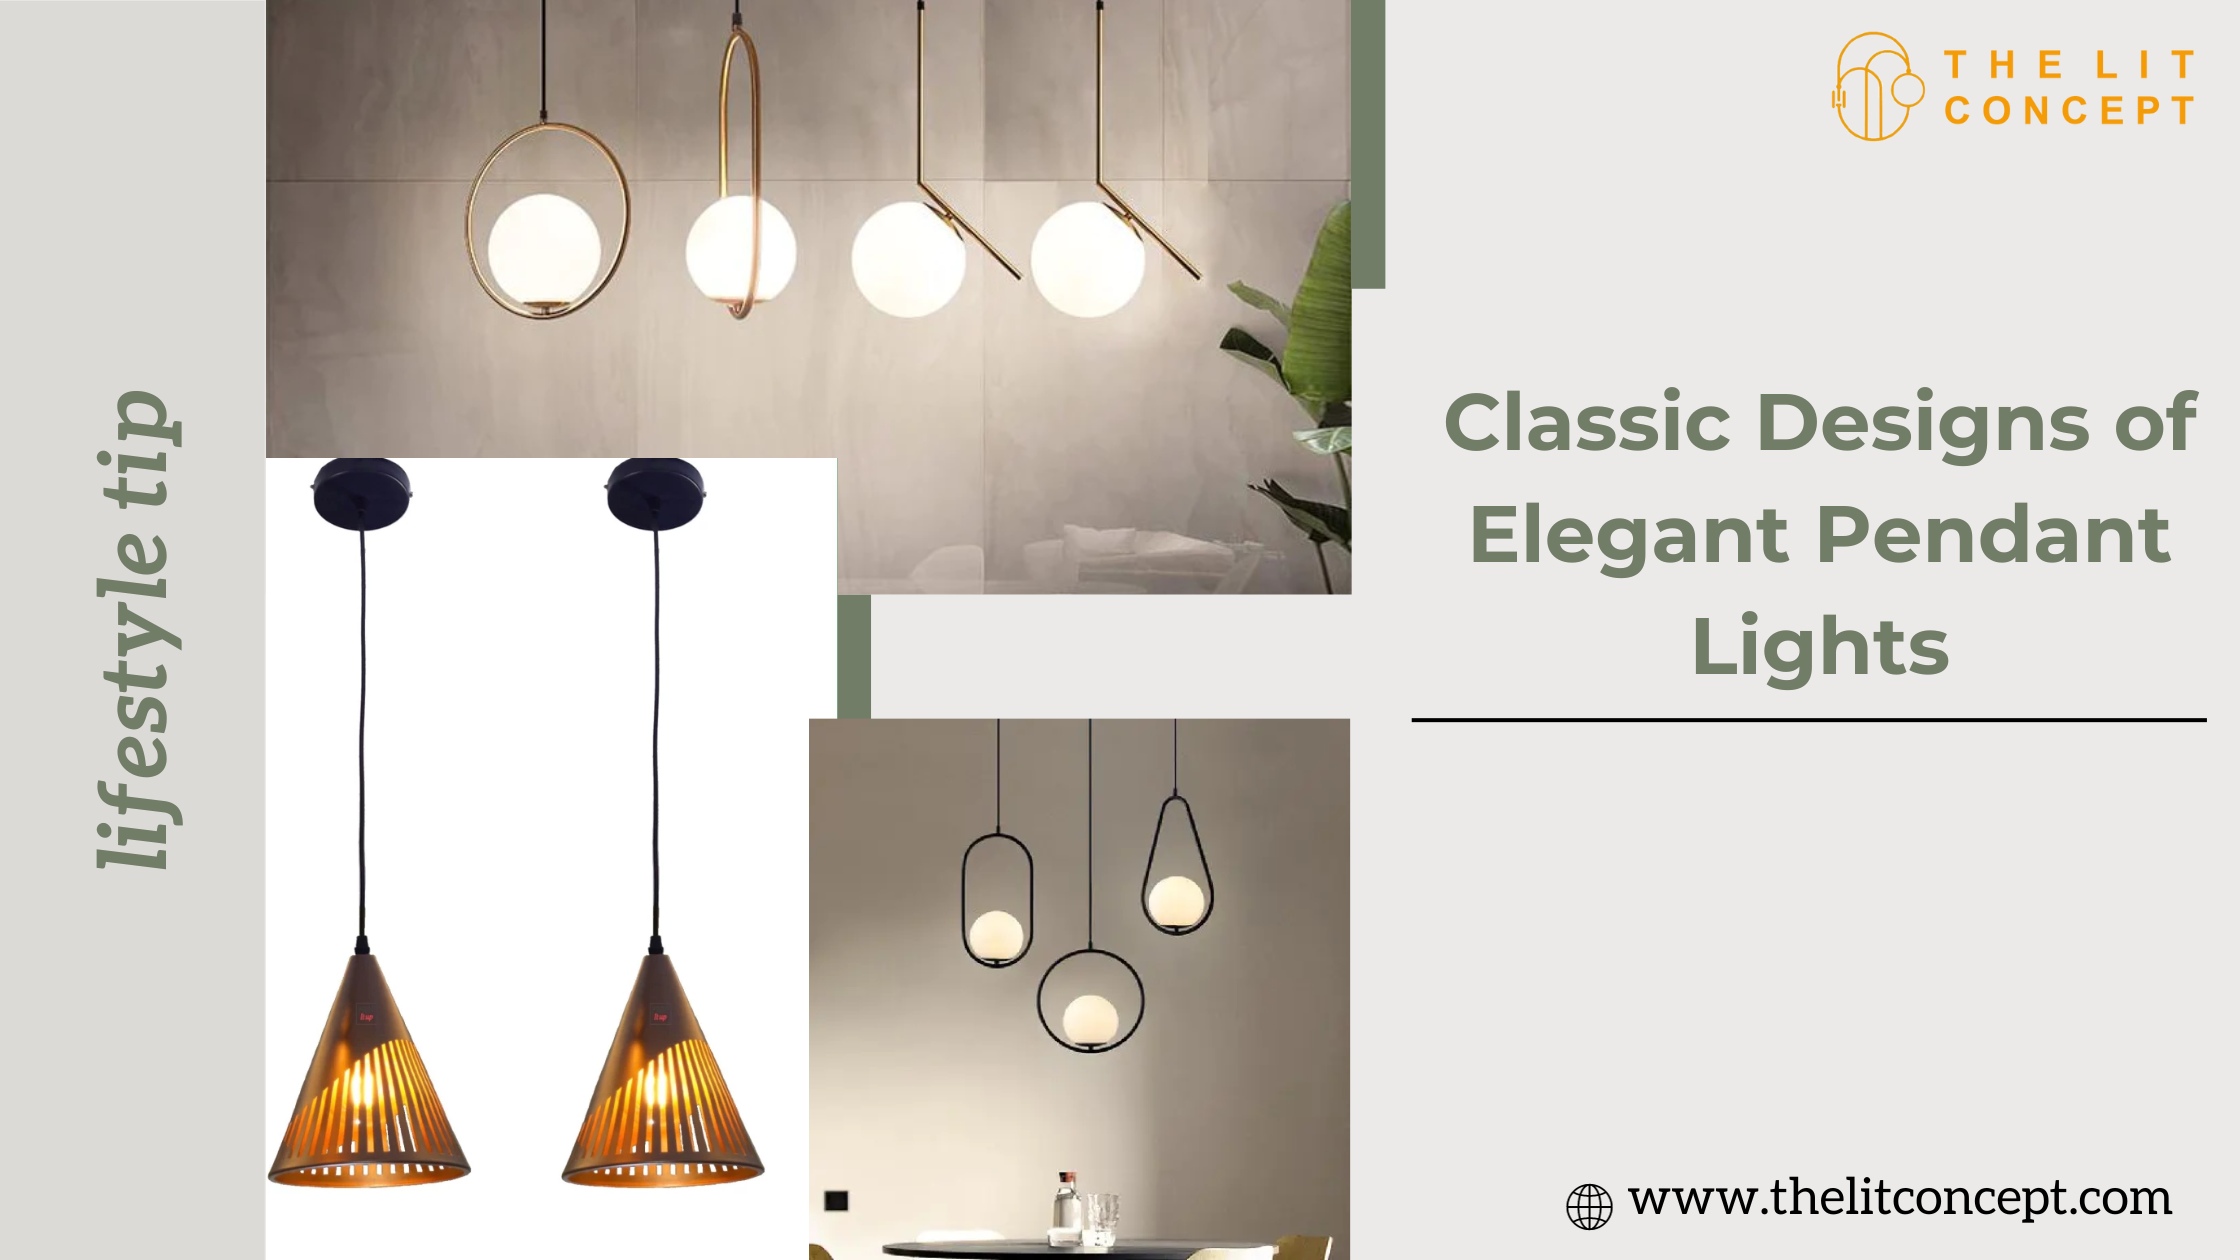 The Classic Designs of Elegant Pendant Lights